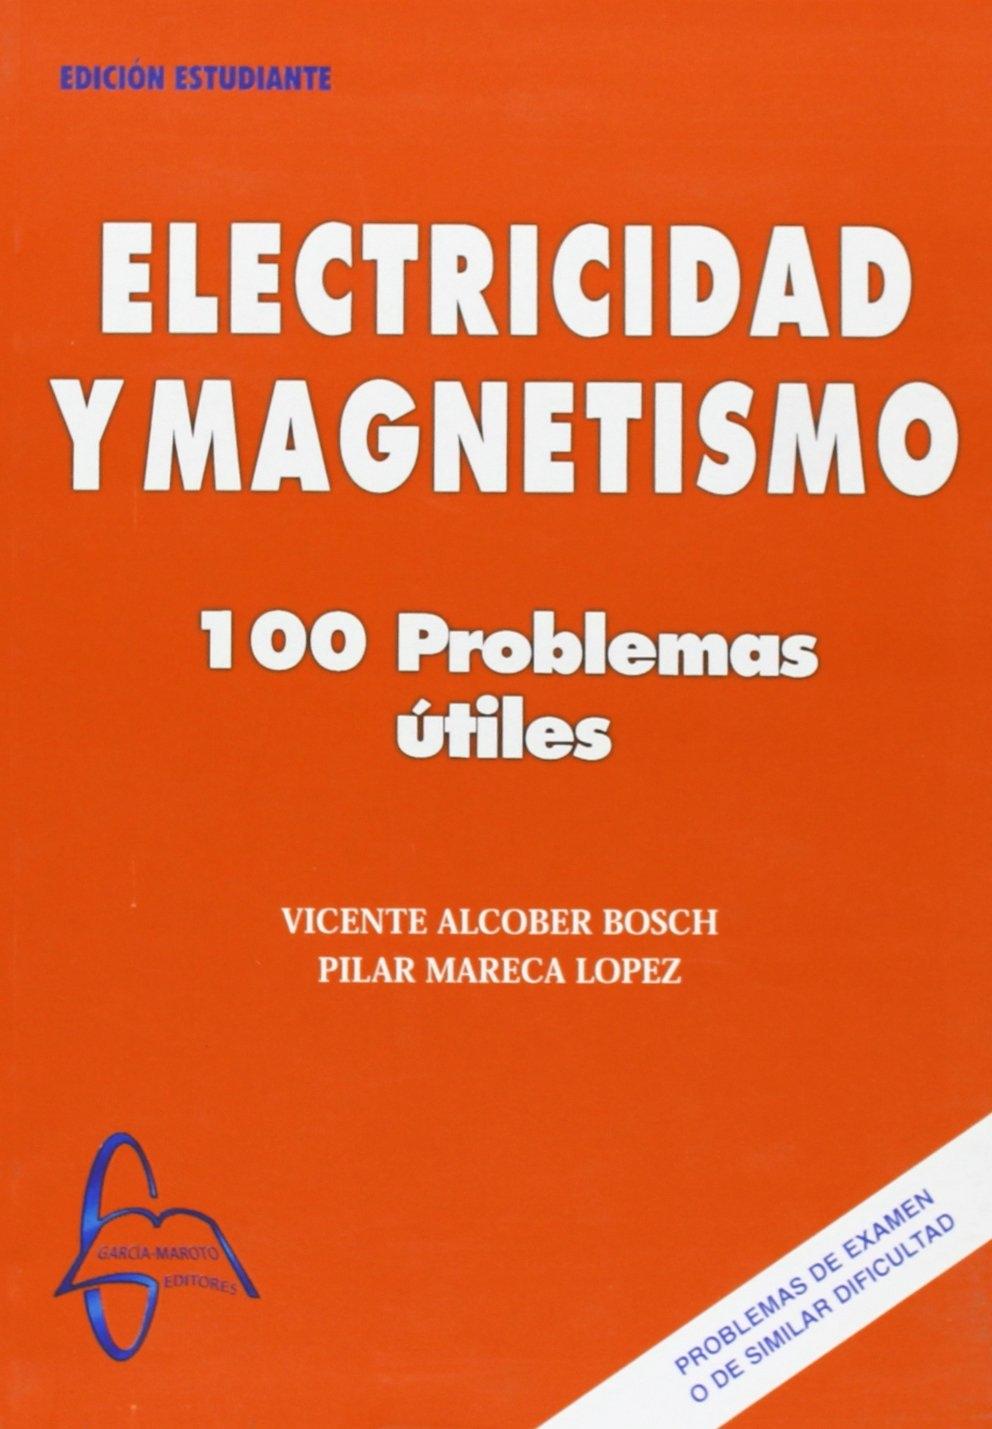 ELECTRICIDAD Y MAGNETISMO "100 PROBLEMAS ÚTILES"